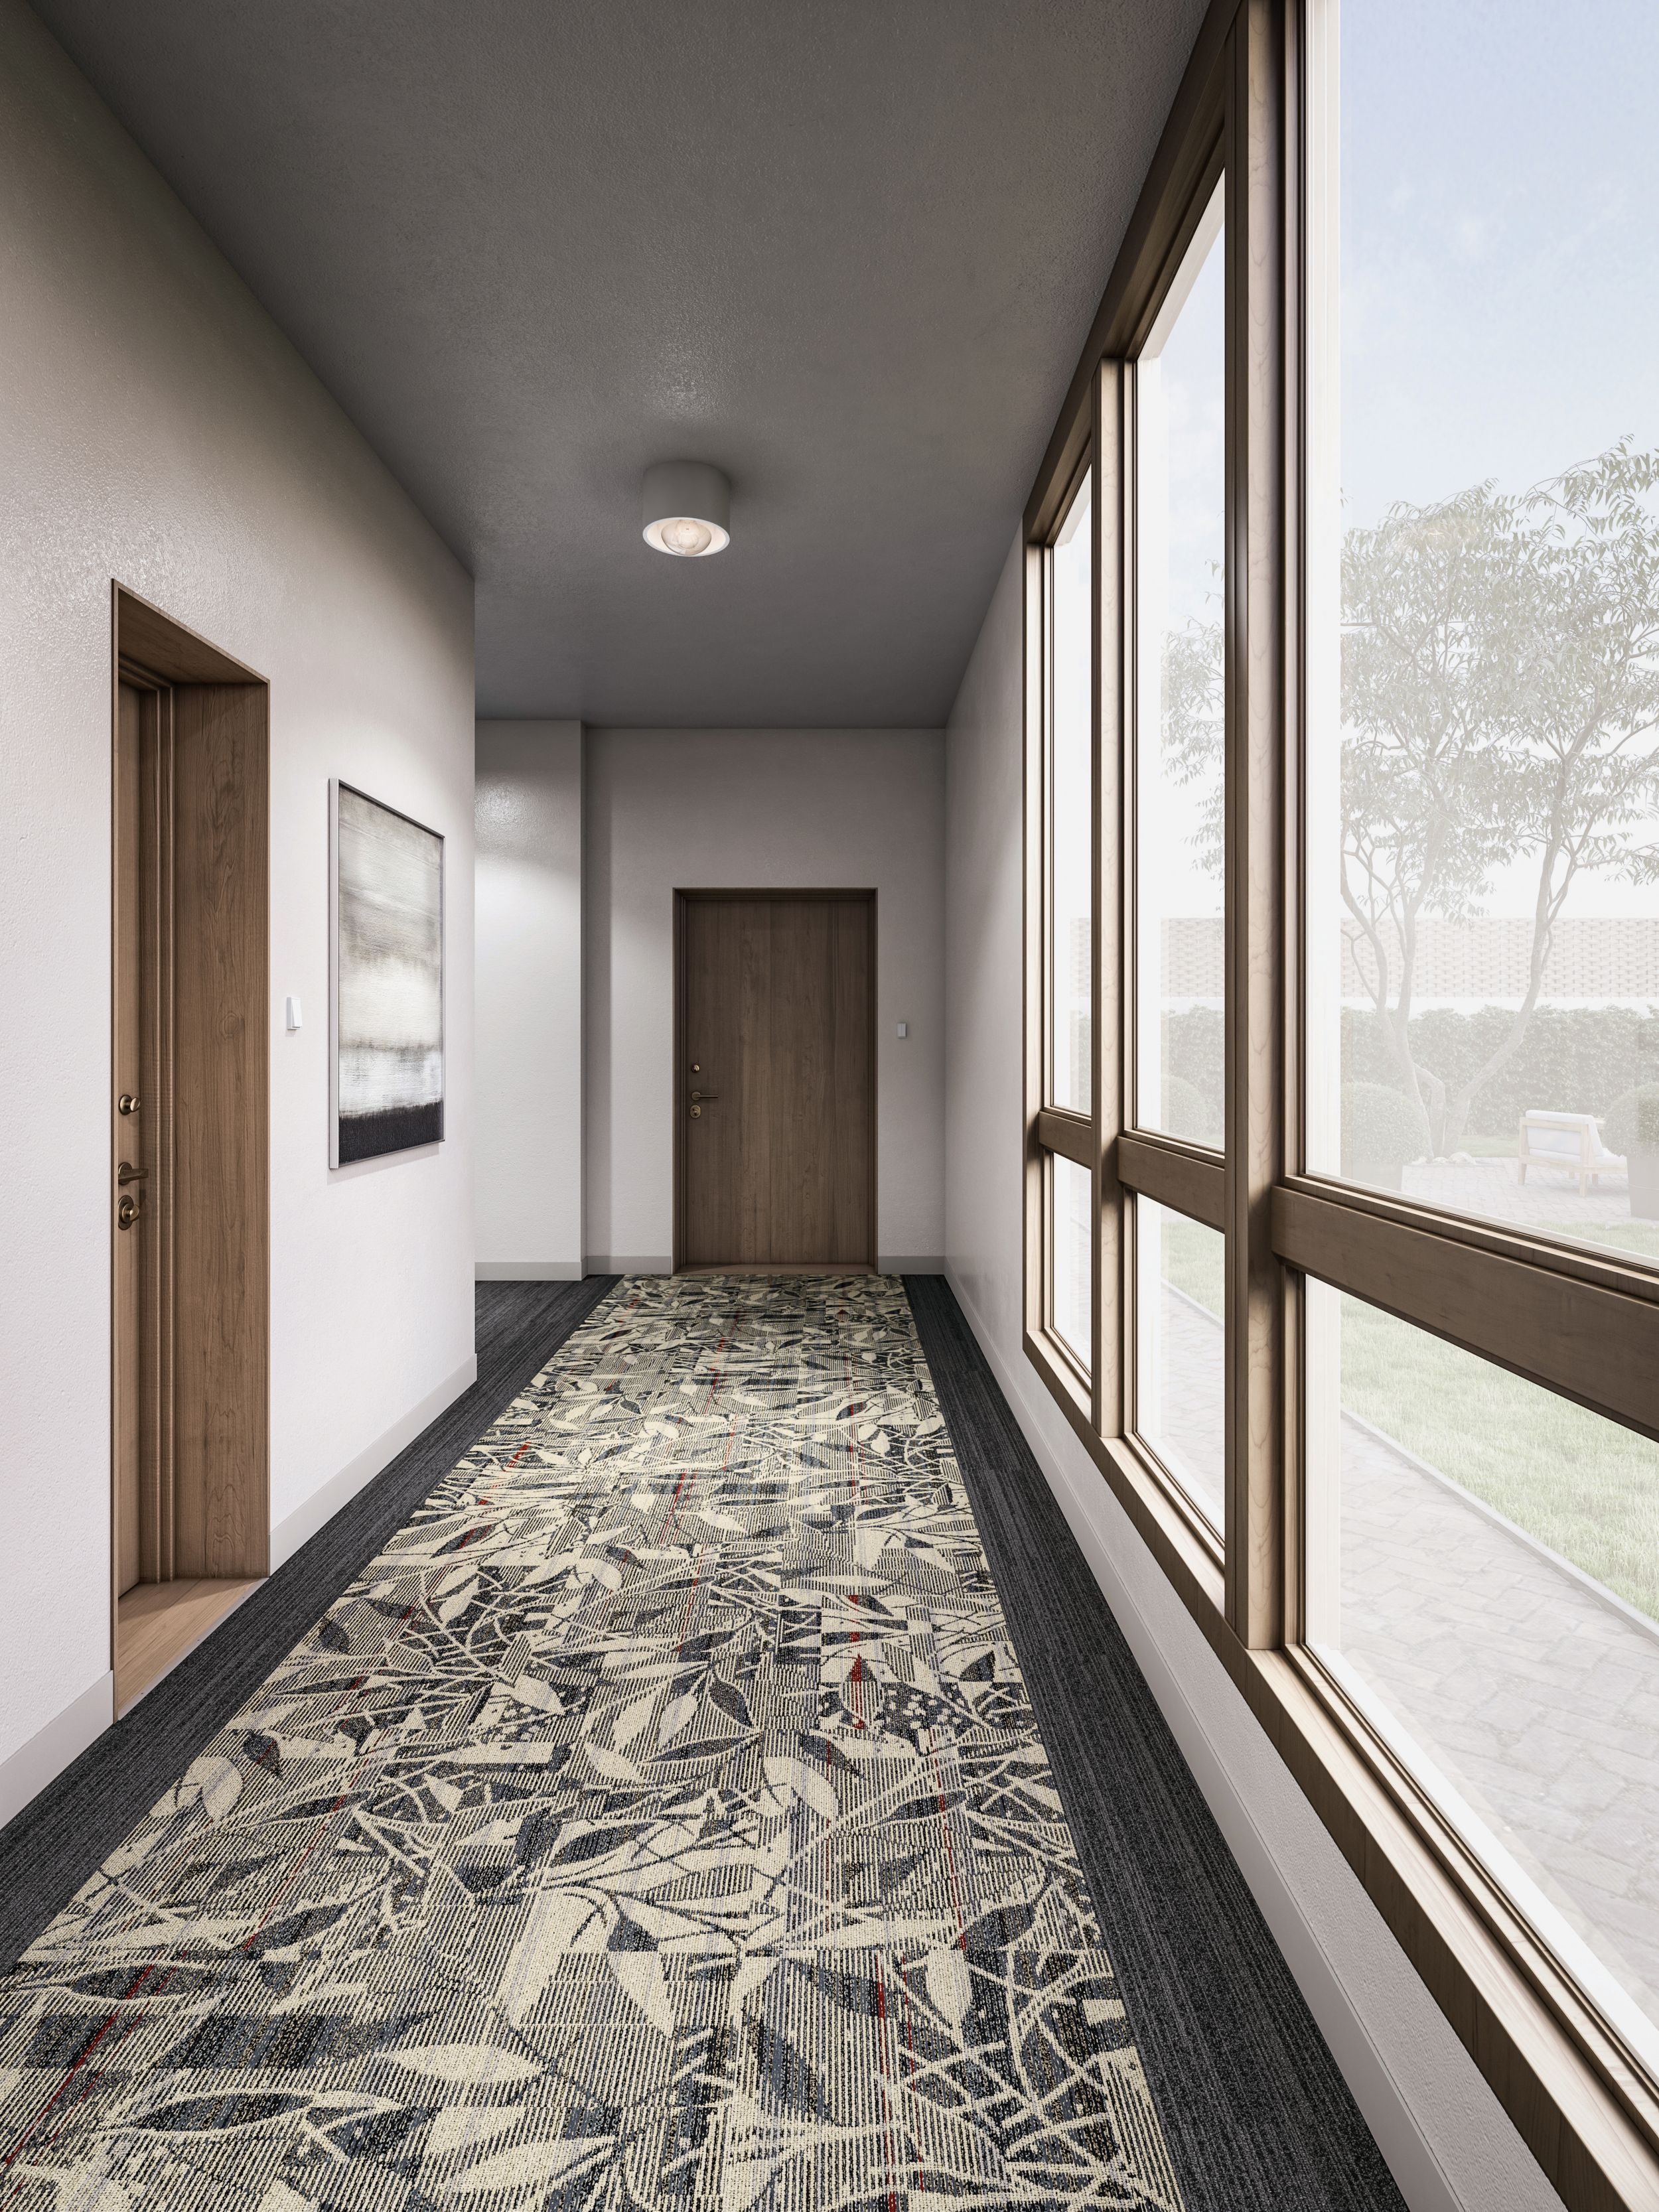 Interface Broadleaf carpet tile with NS231 plank carpet tile in corridor image number 16